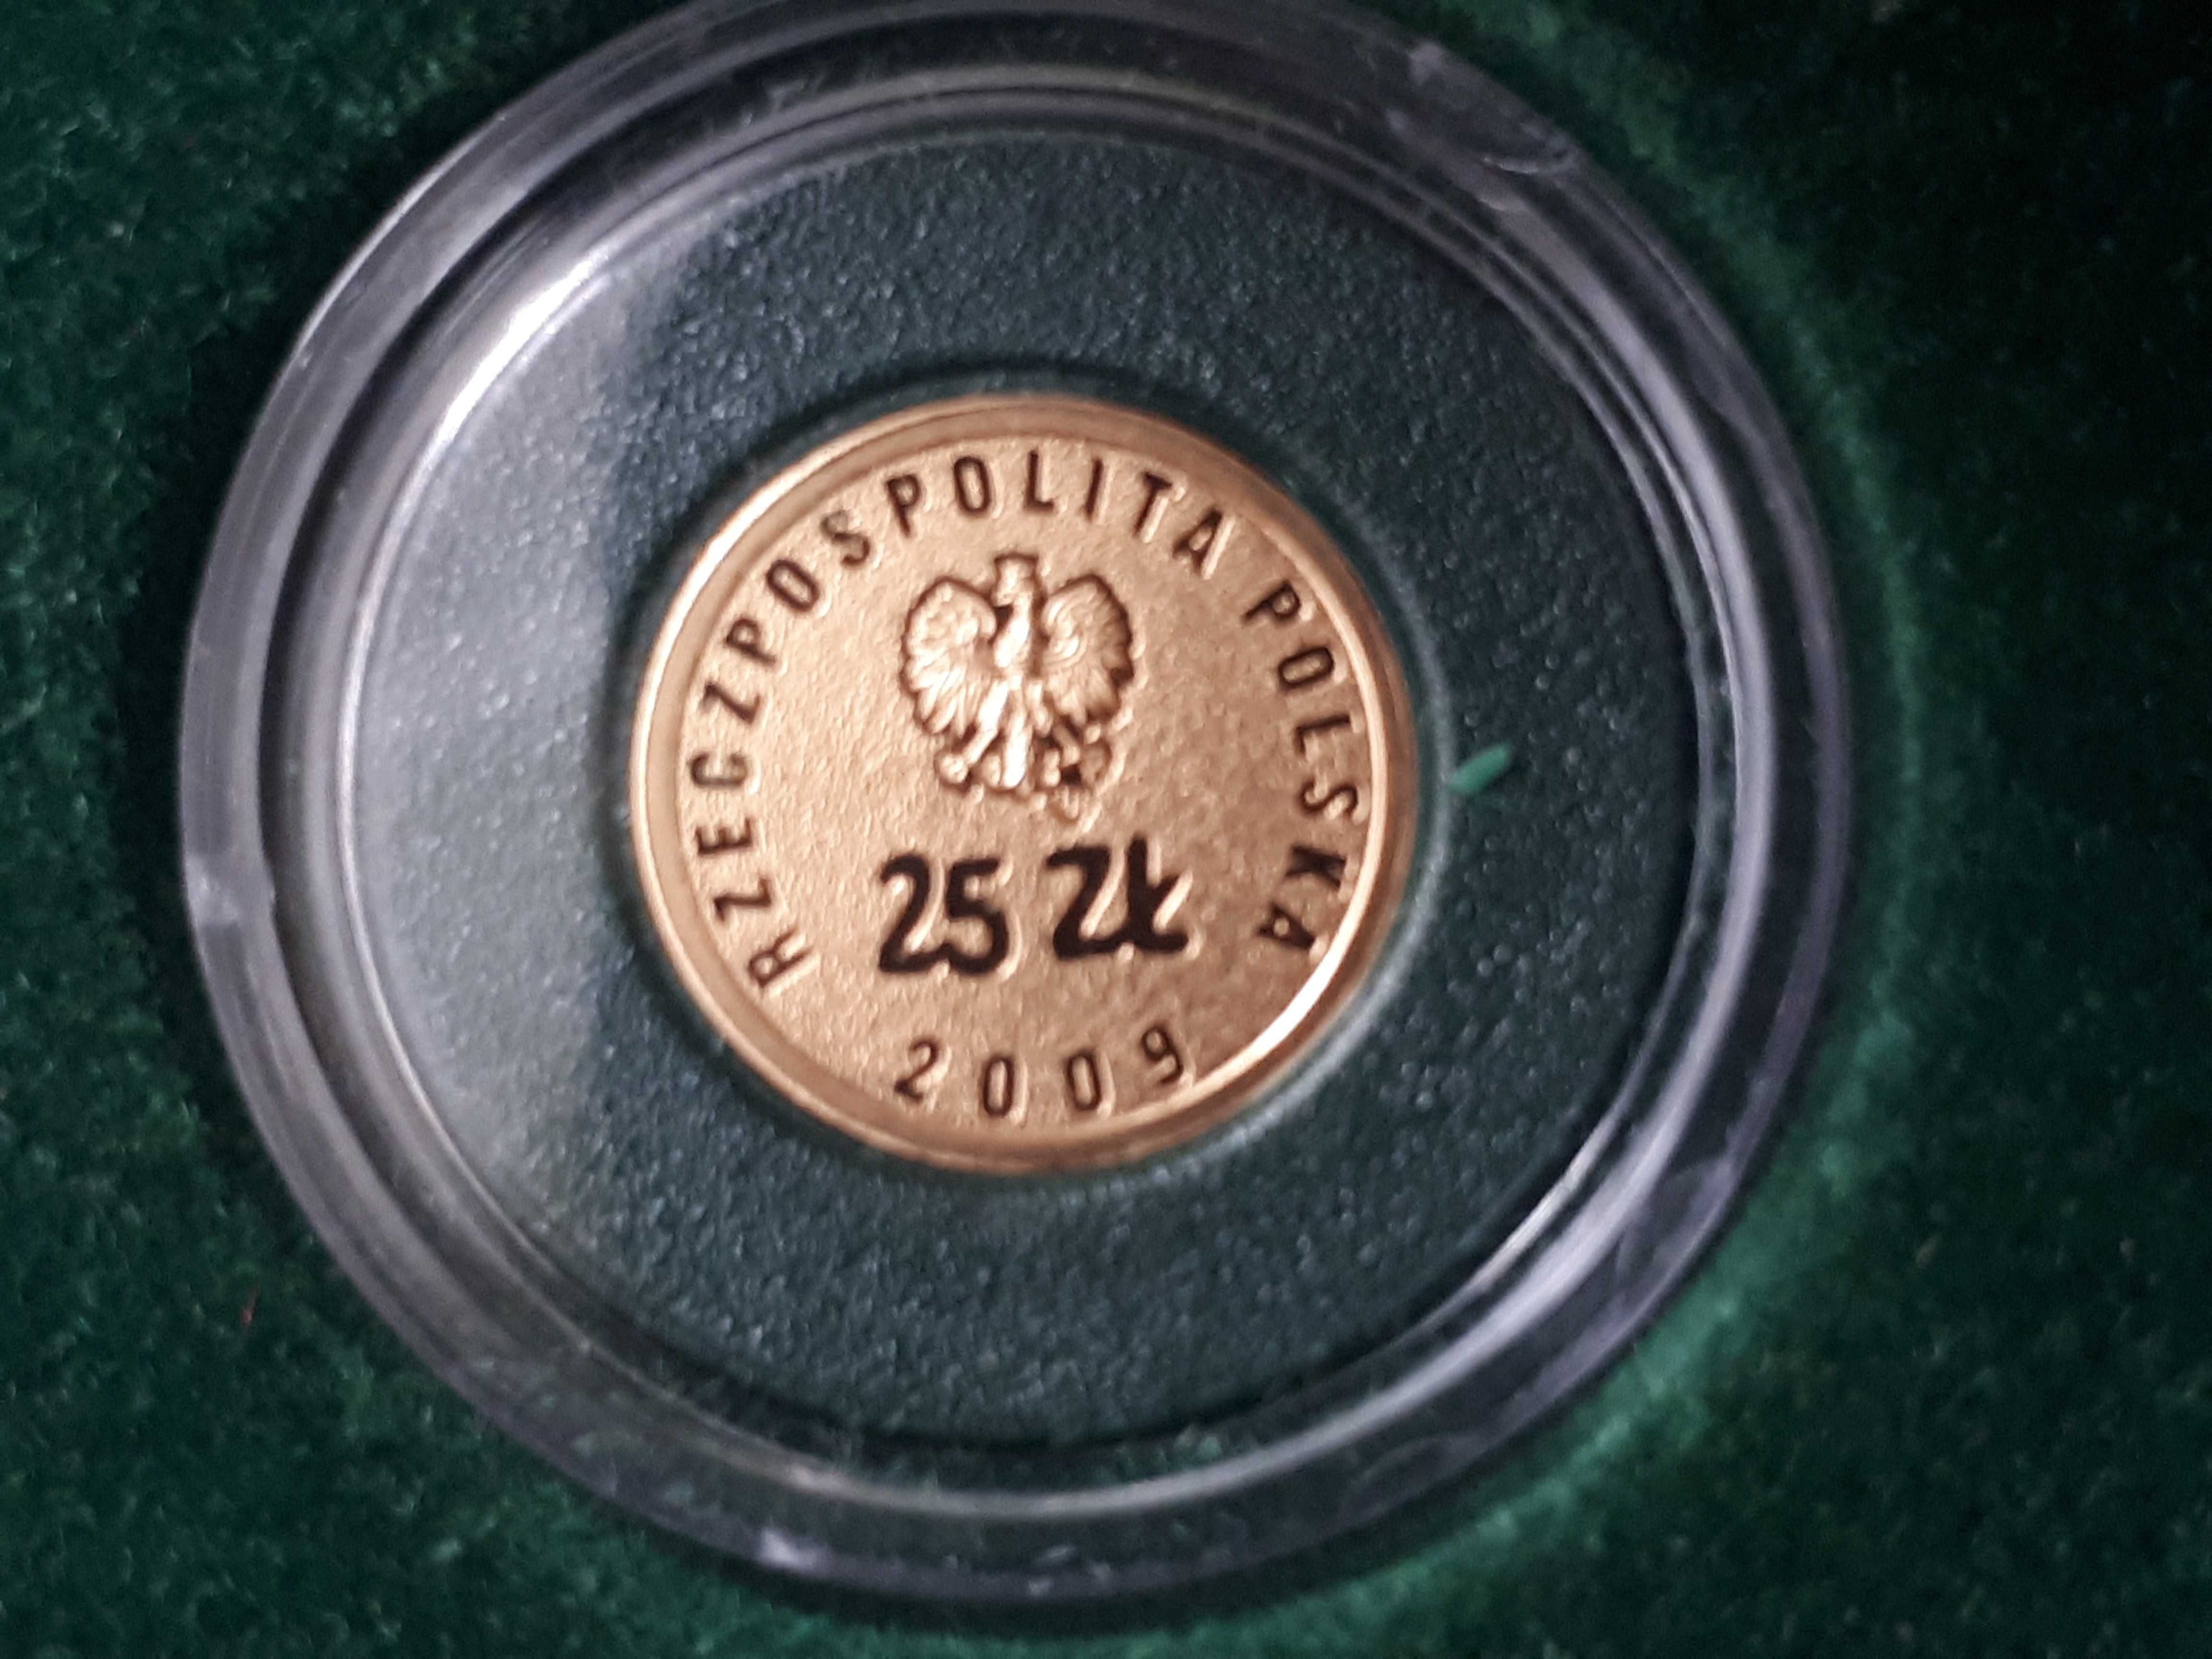 Złota Moneta 25 złotych , Wybory - Solidarność 2009r